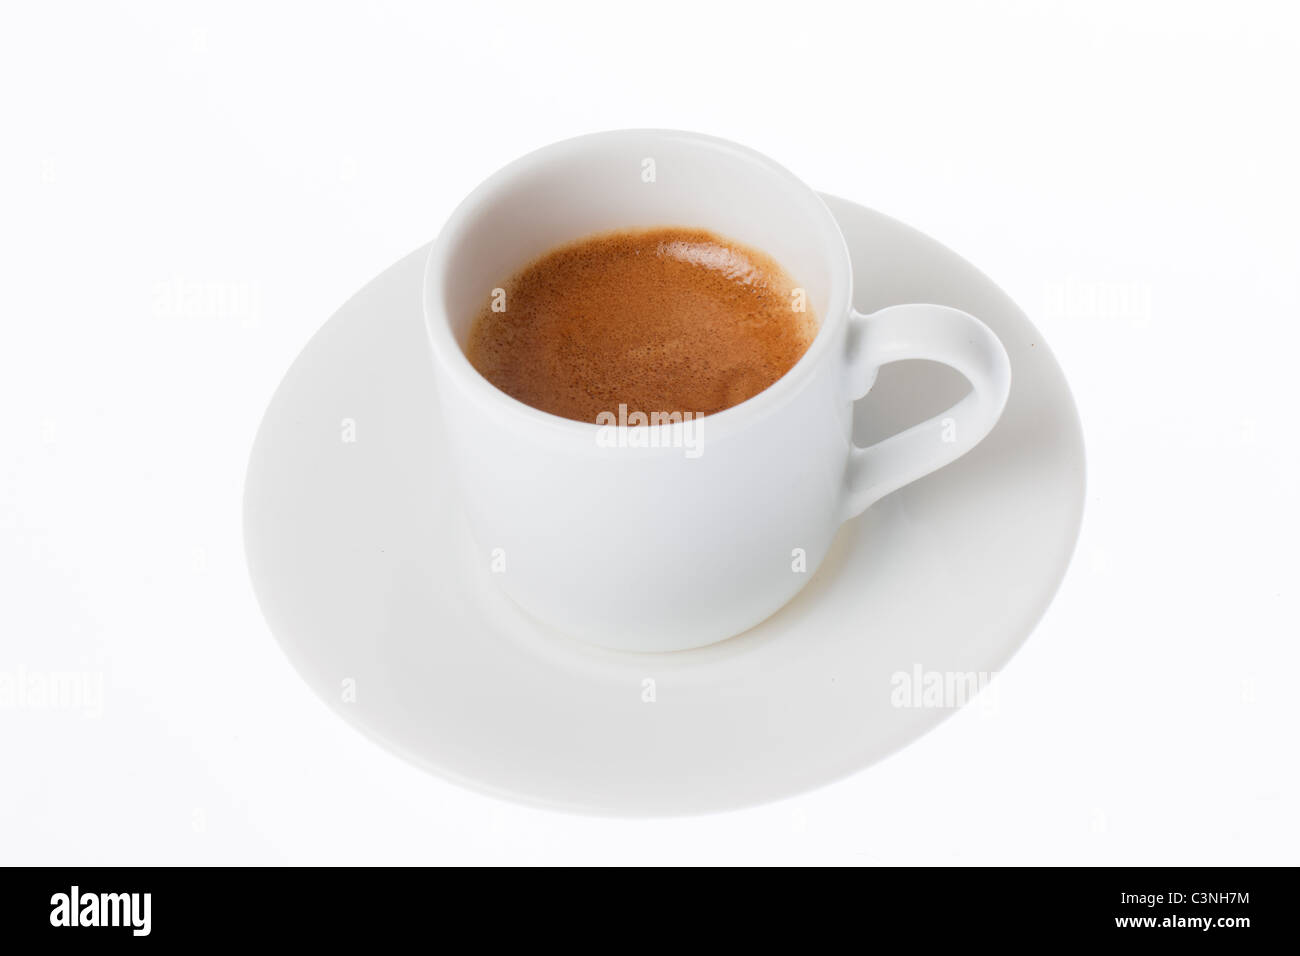 Un café espresso en una taza y plato blanco sobre fondo blanco. Foto de stock